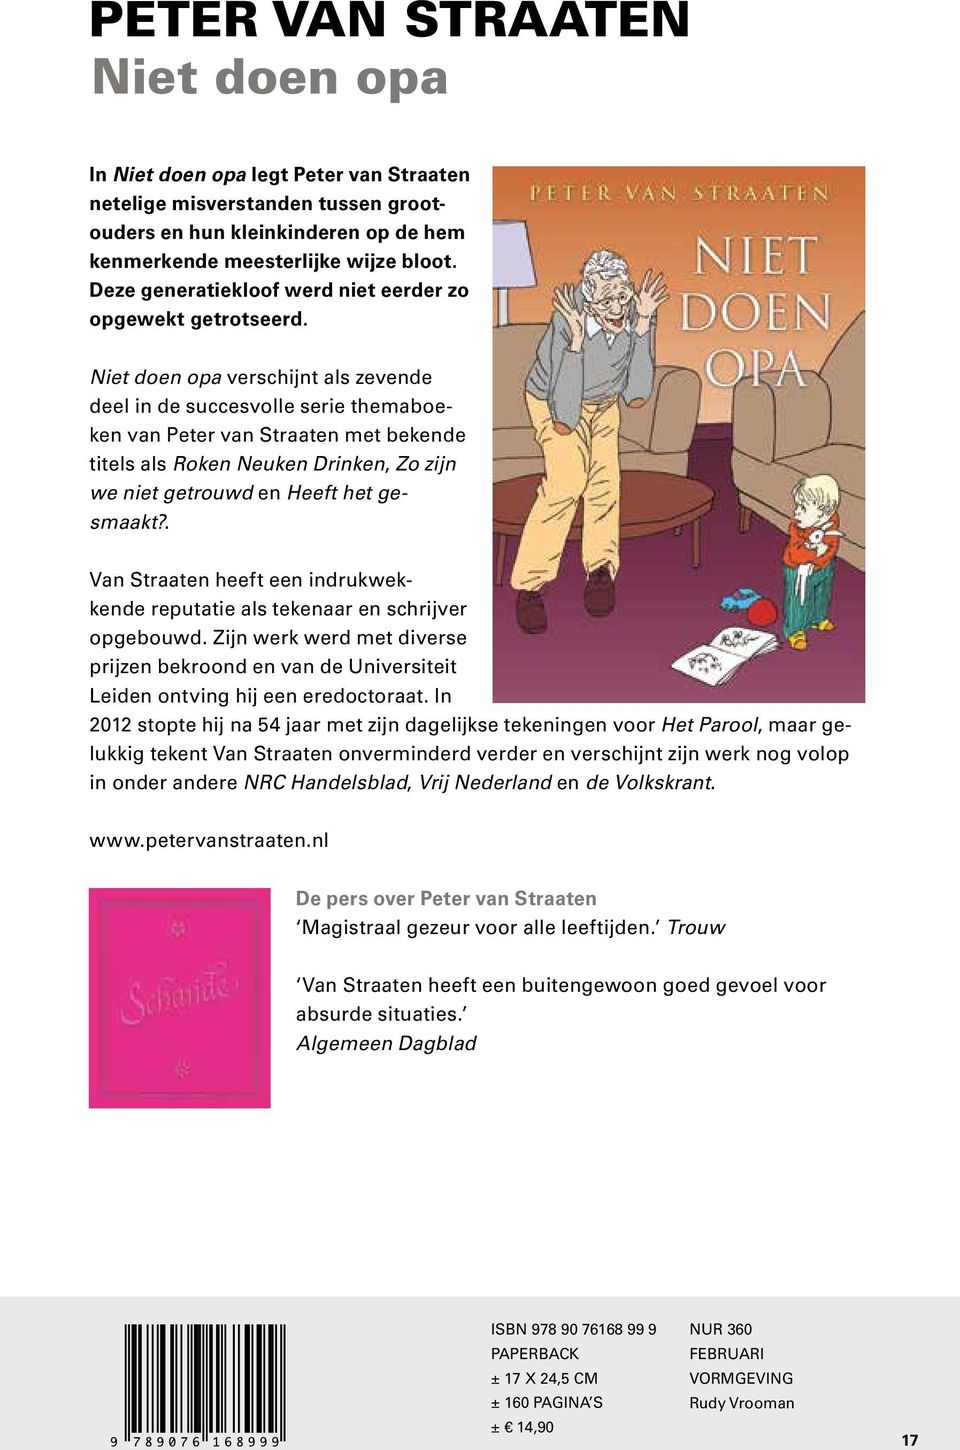 Niet doen opa verschijnt als zevende deel in de succesvolle serie themaboeken van Peter van Straaten met bekende titels als Roken Neuken Drinken, Zo zijn we niet getrouwd en Heeft het gesmaakt?